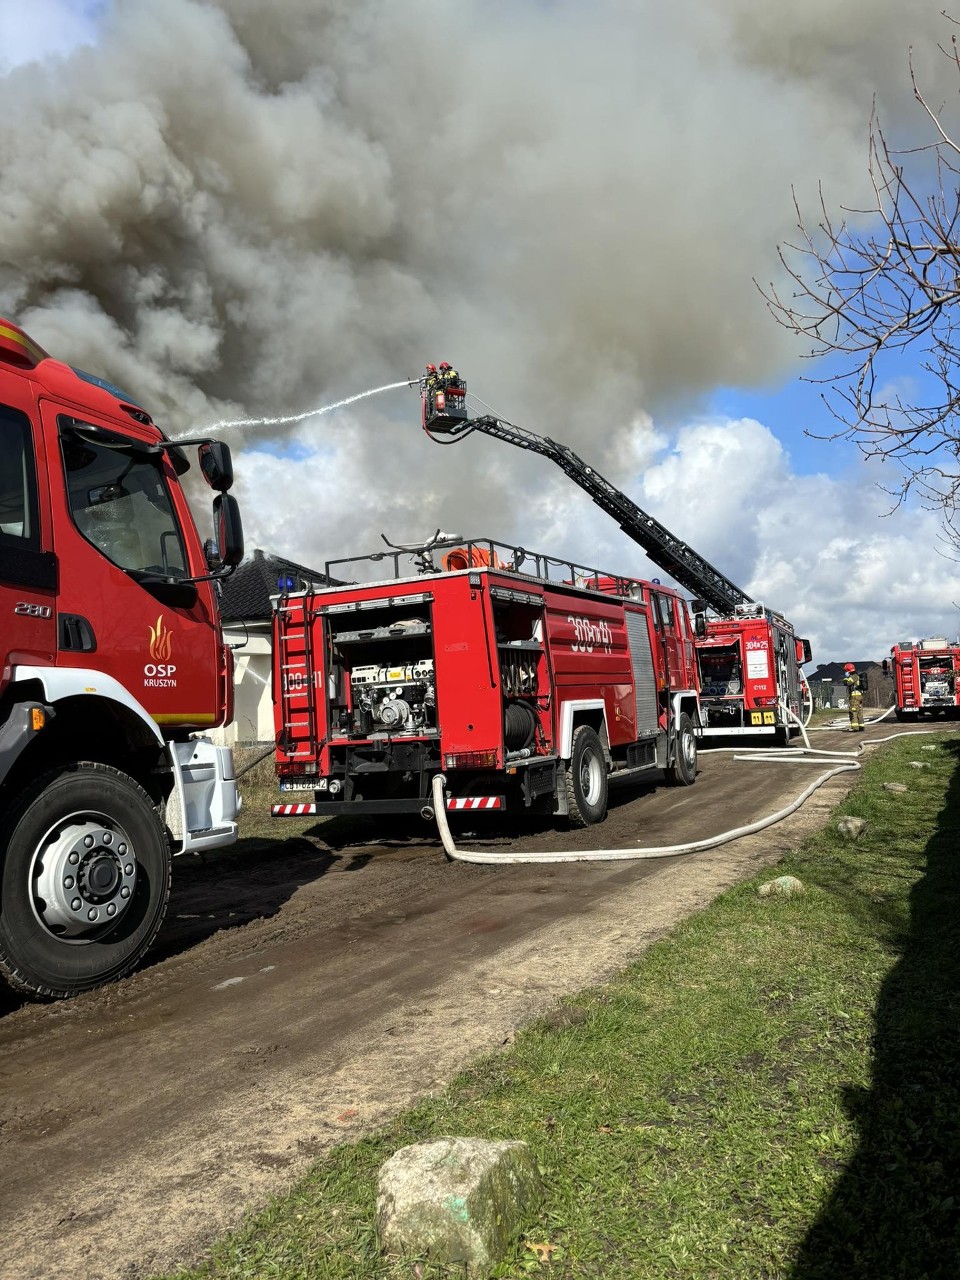 W nowym domu w Łochowie 25 marca wybuchł pożar